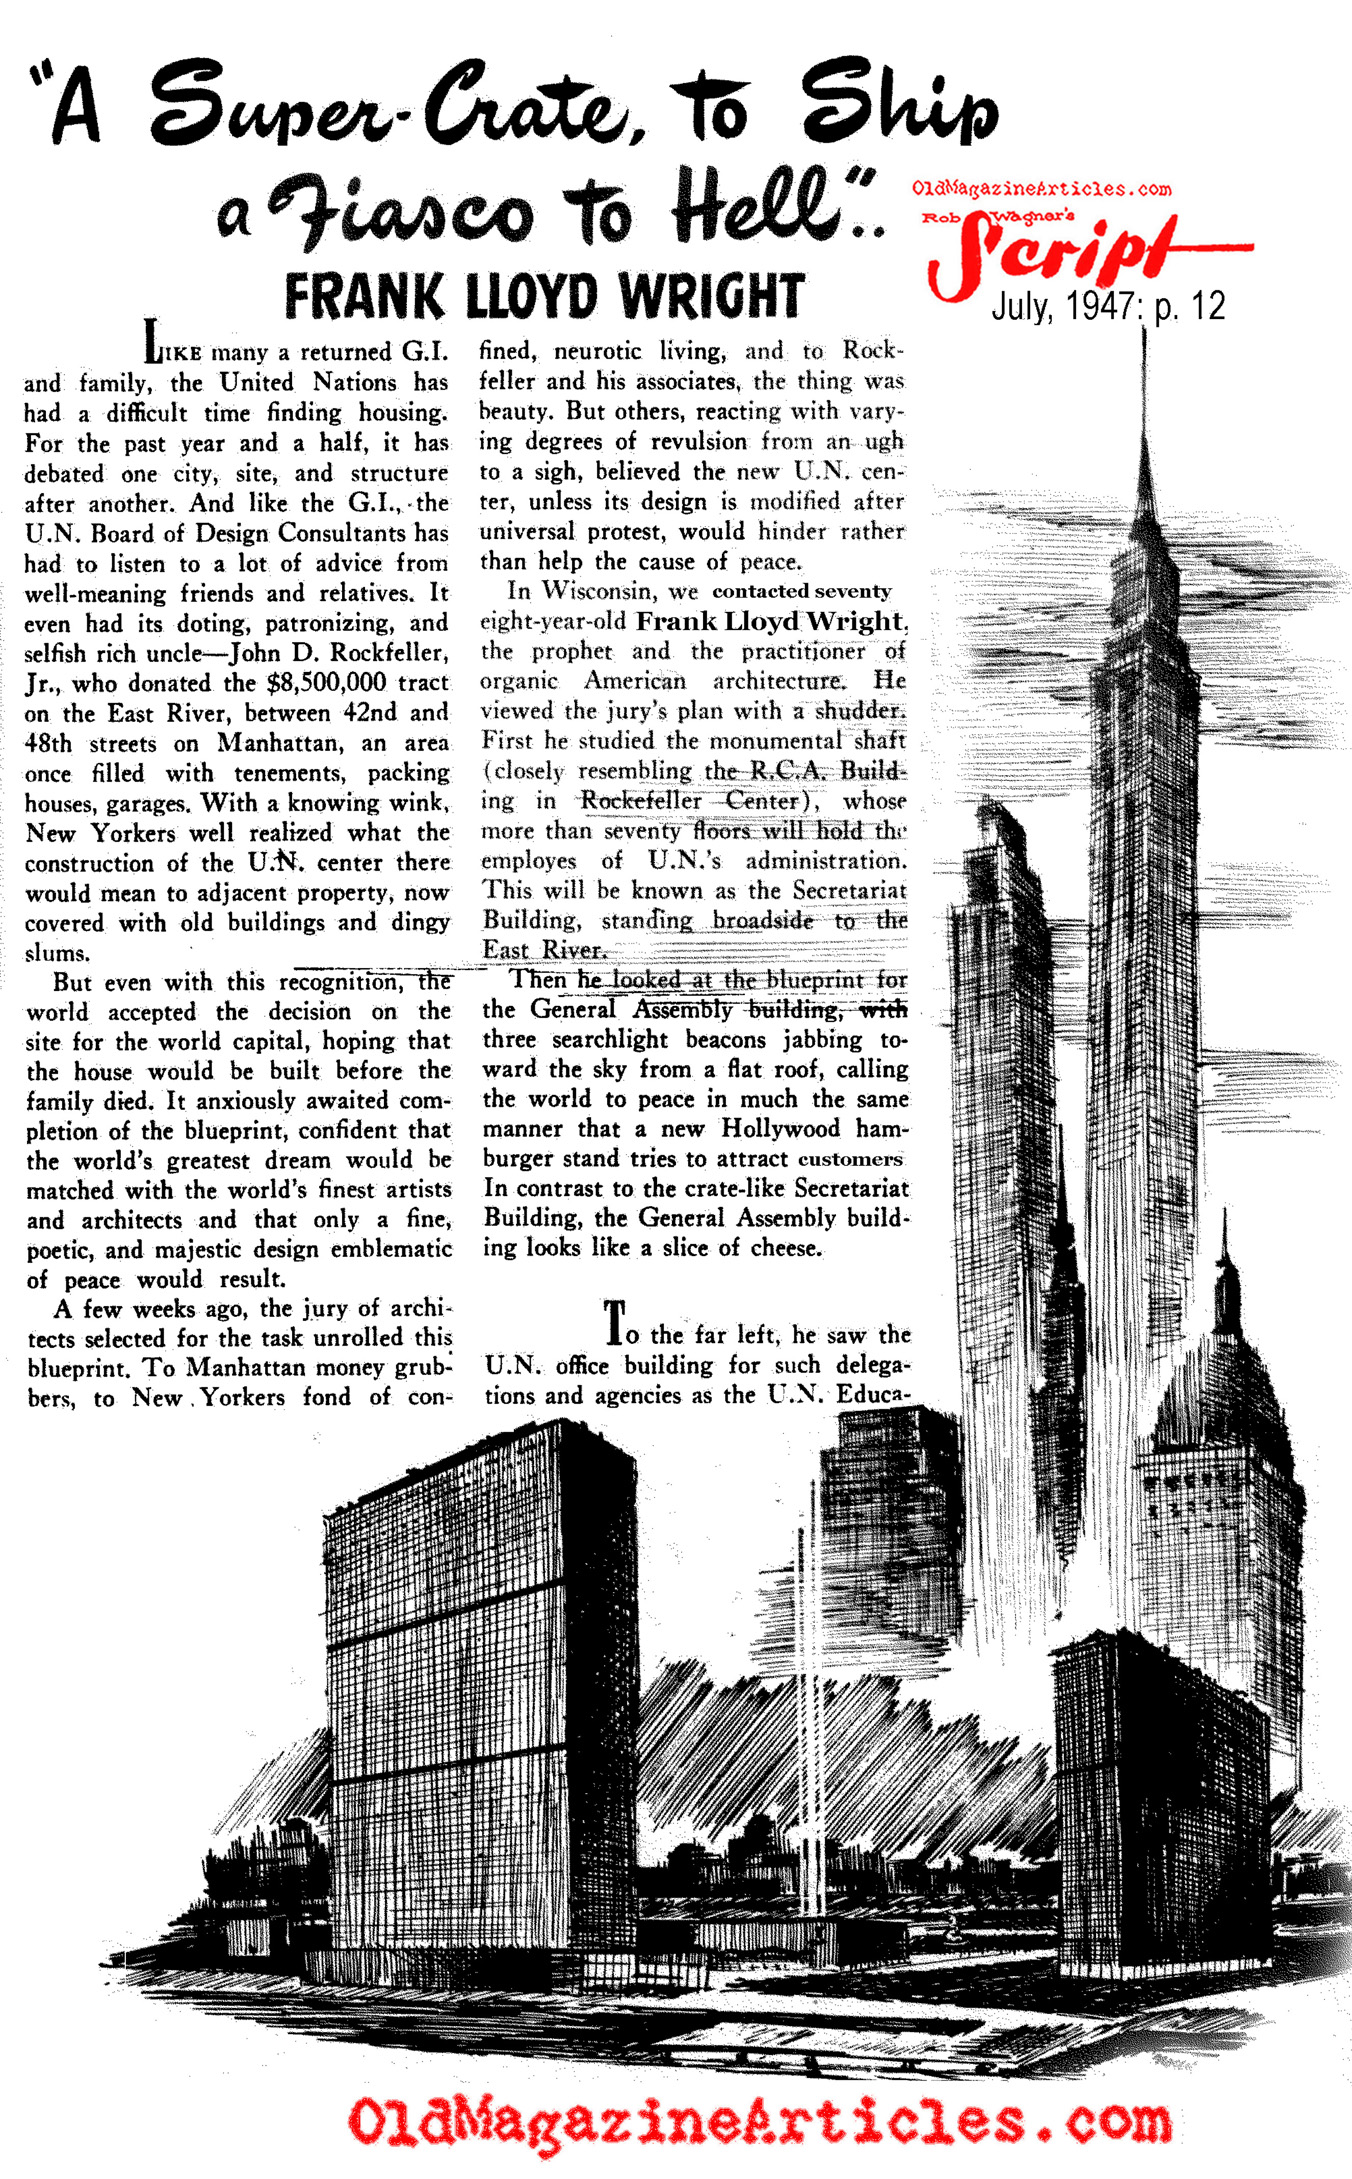 Frank Lloyd Wright Hated the U.N. Building (Rob Wagner's Script Magazine, 1947)